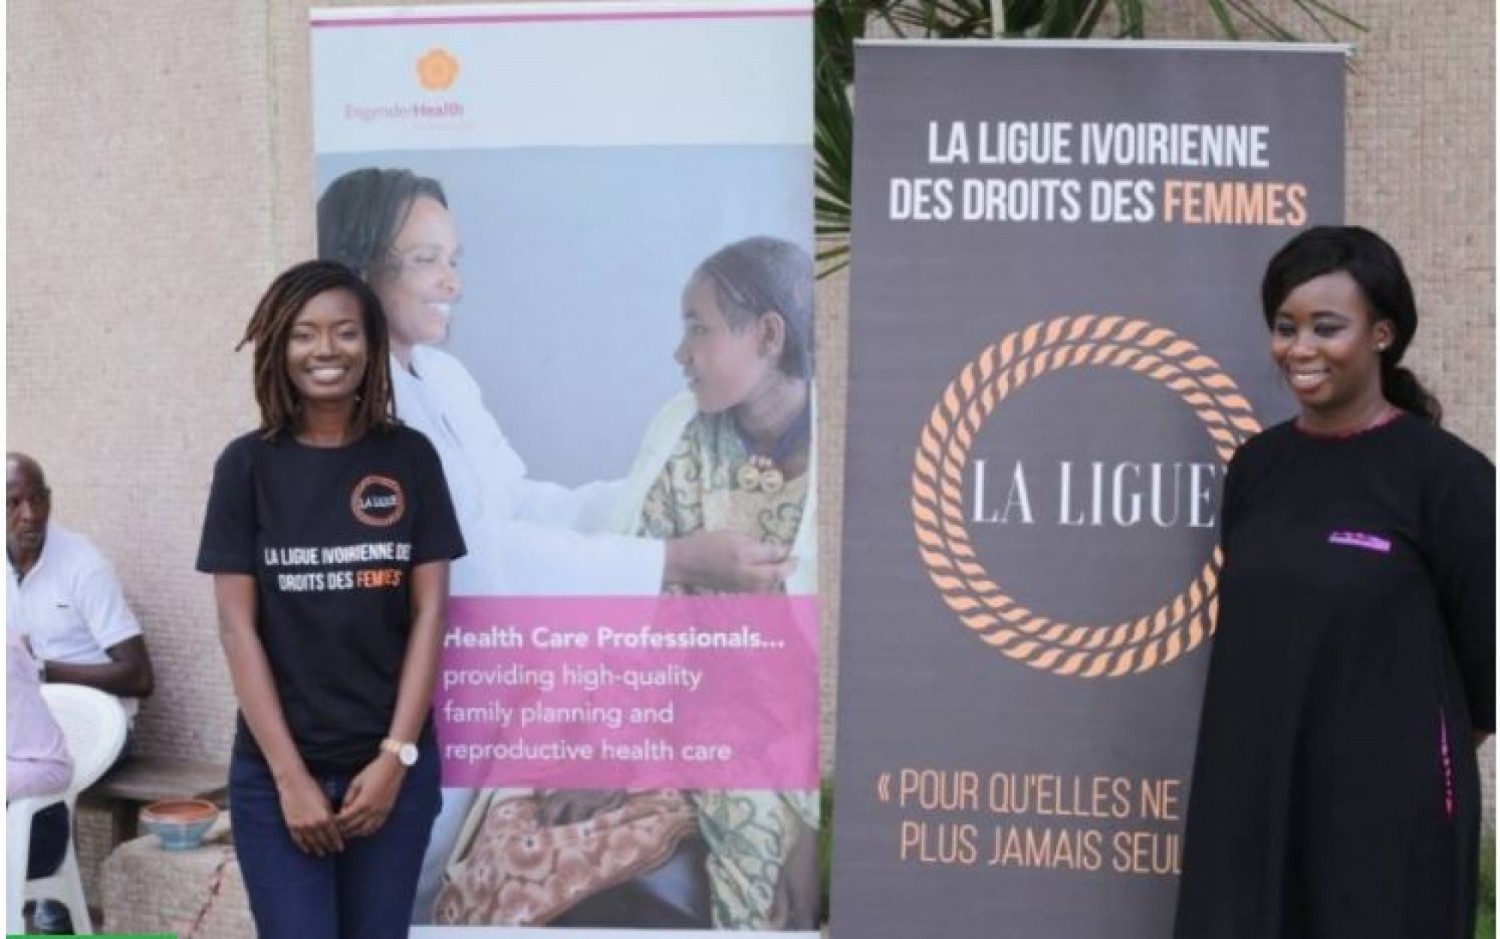 Côte d'Ivoire : Affaire de séquestration et de trafic d'enfants, une organisation demande l'ouverture d'une enquête